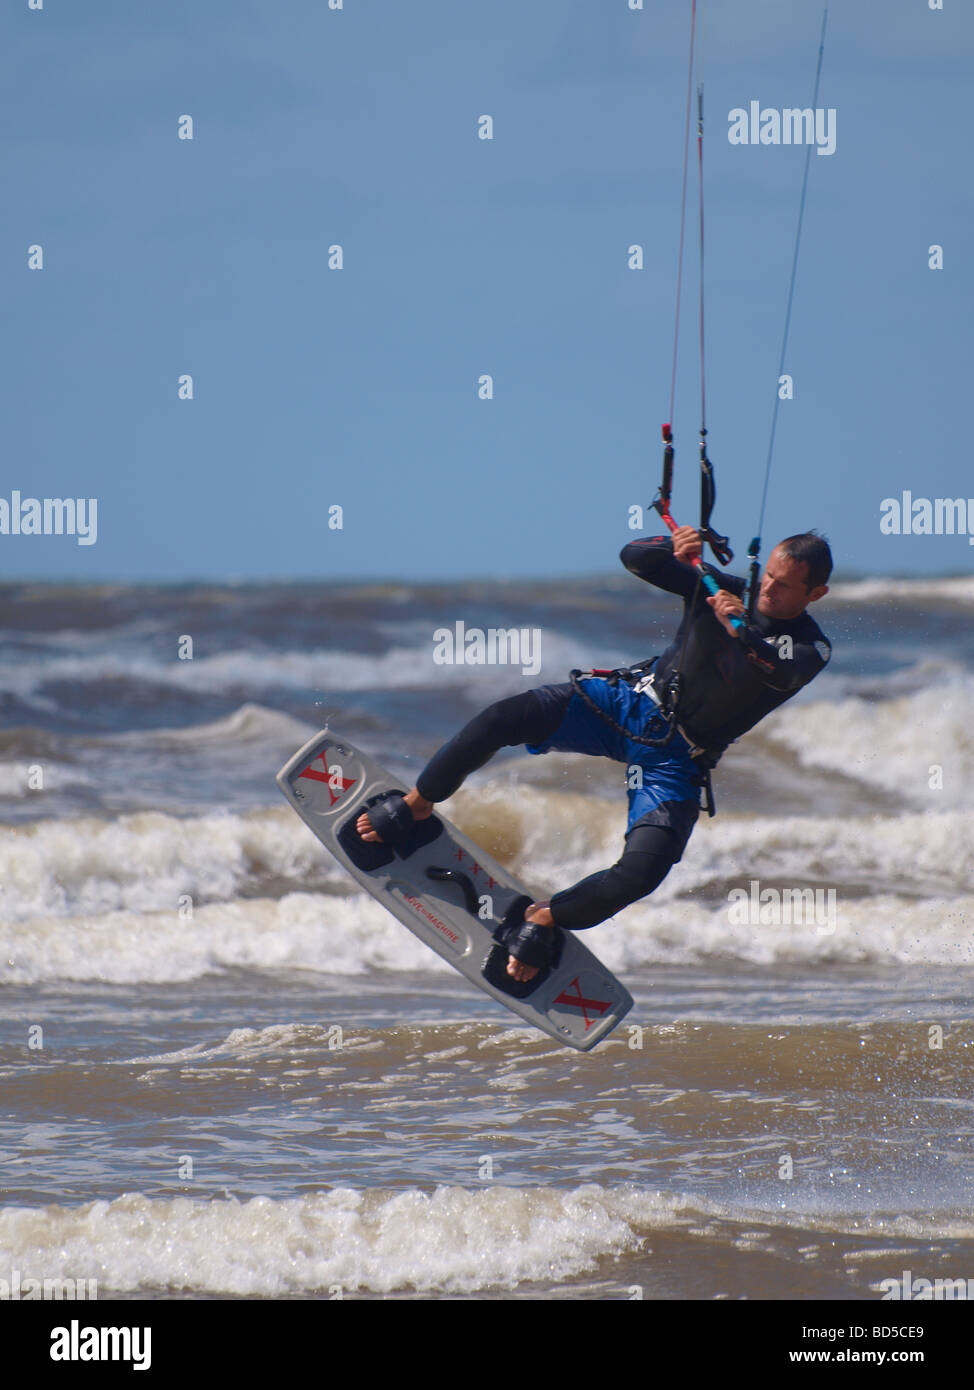 Kitesurfer in action Devon UK Stock Photo